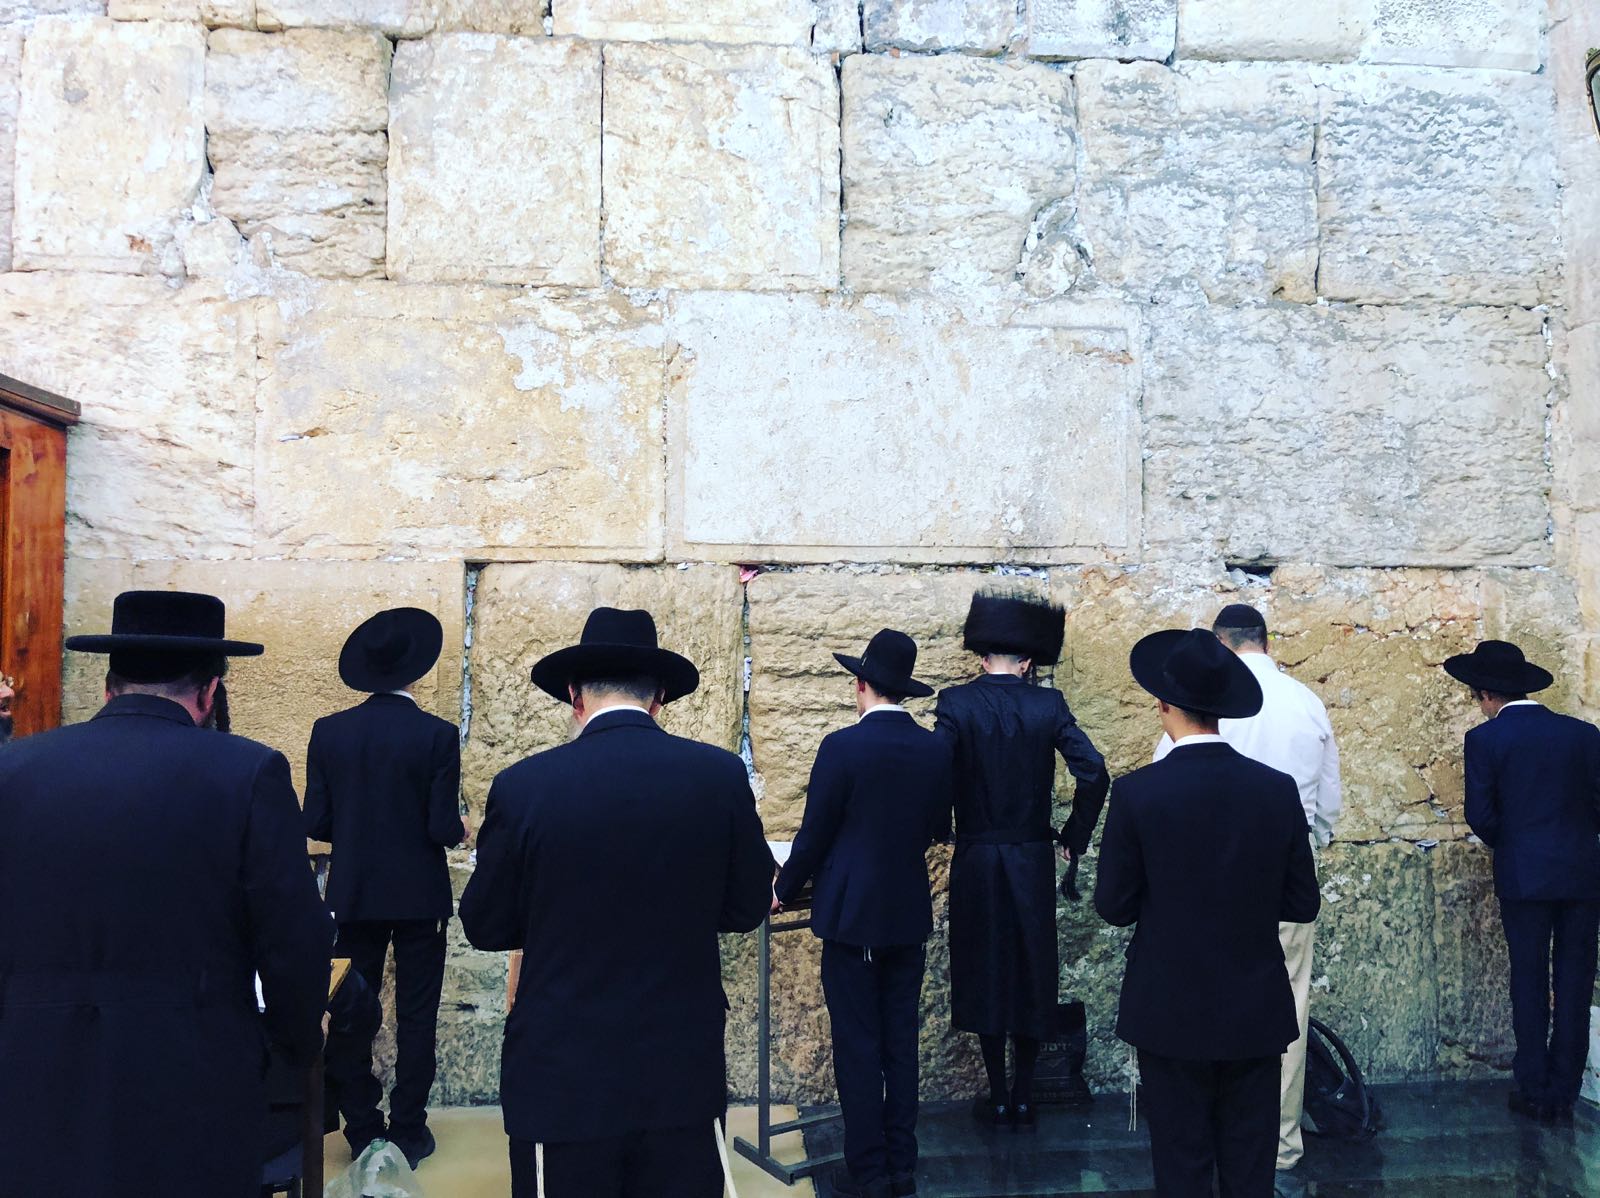 哭墙，犹太教徒至该墙低声祷告，以表示对古神庙的哀悼并期待其恢复的情感…